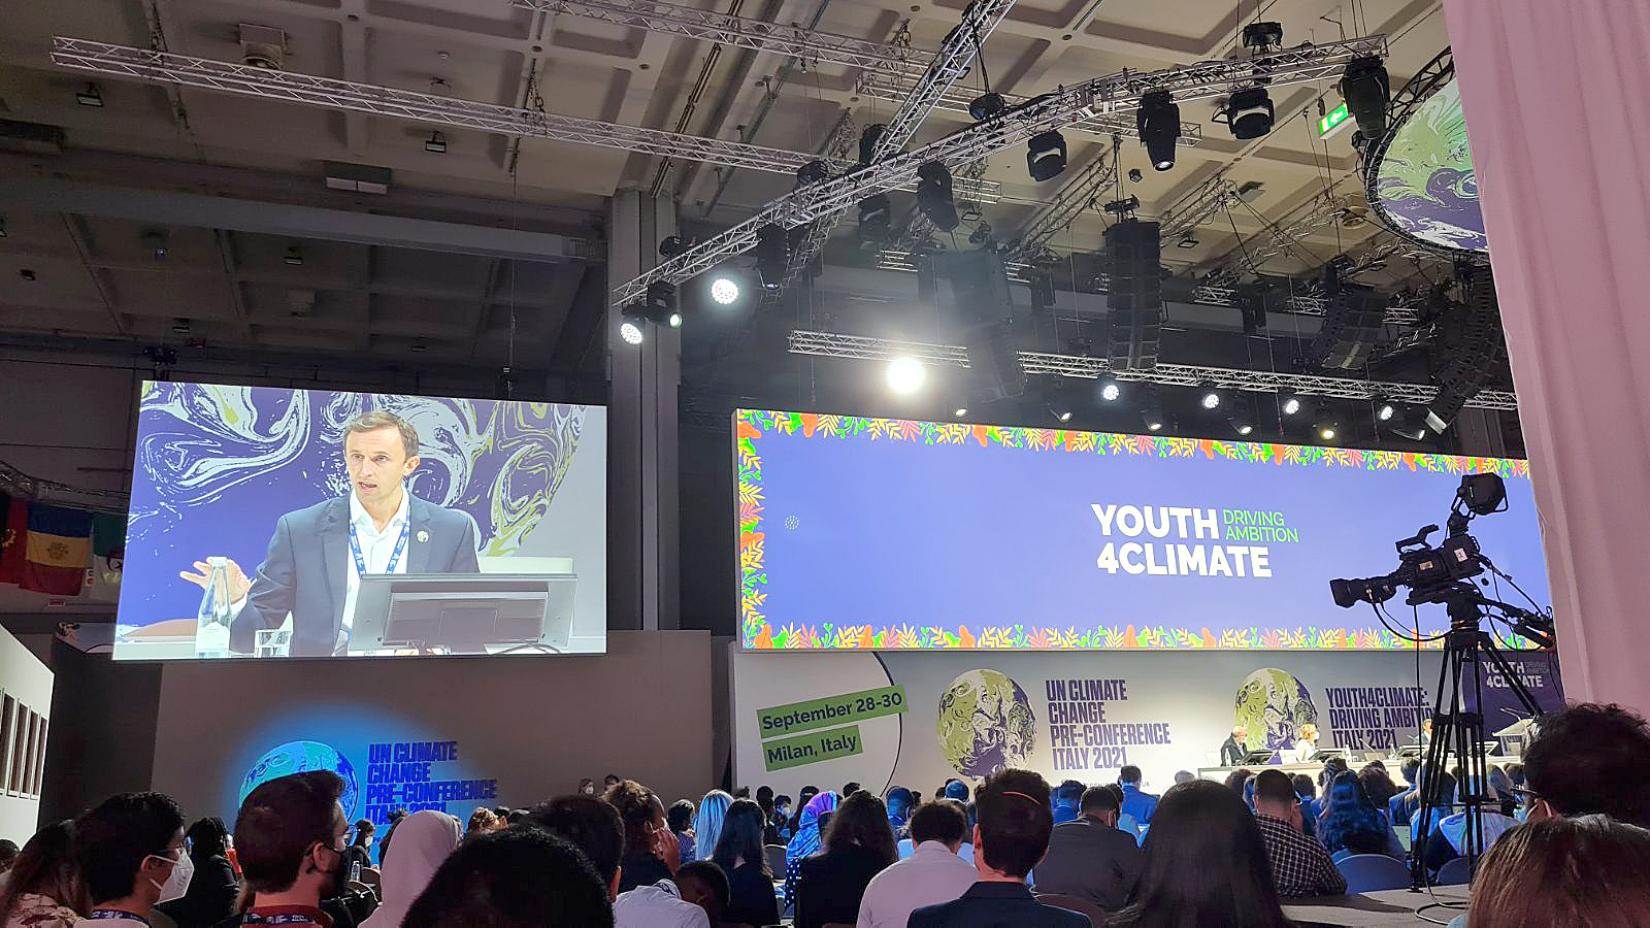 Конференция «Молодежь для климата: повышение амбициозности целей» в Милане